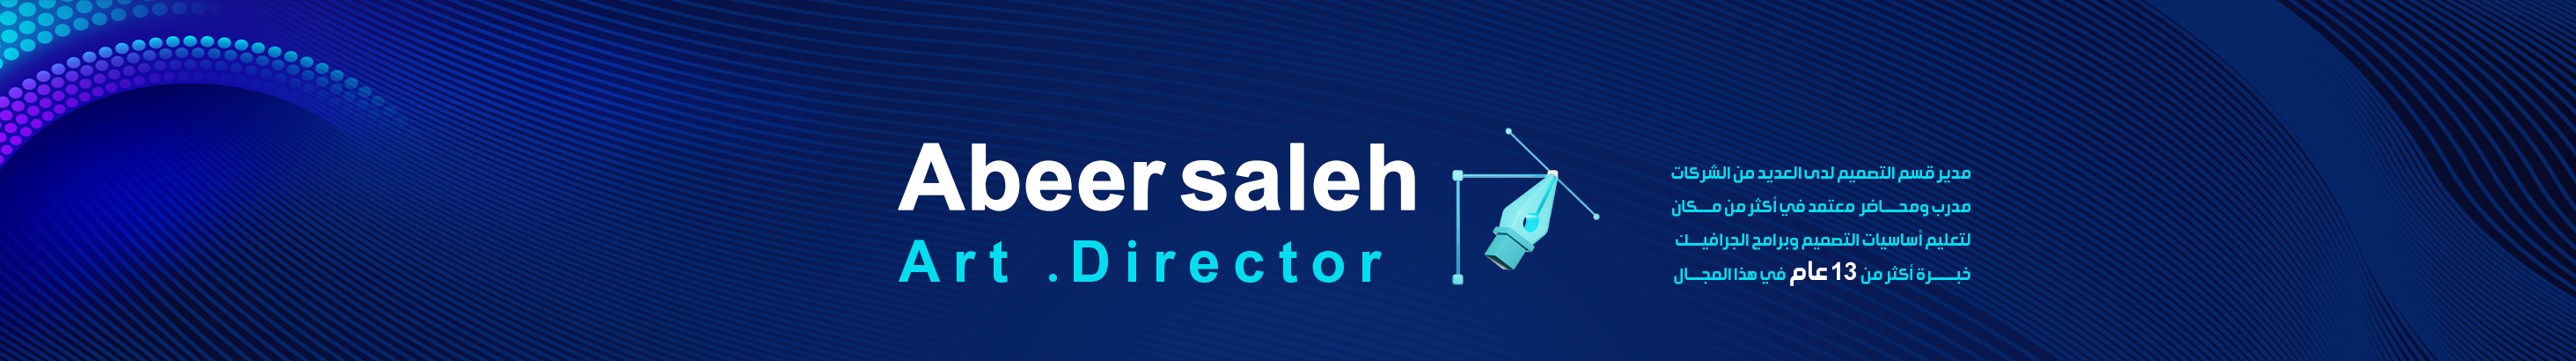 Banner de perfil de Abeer saleh